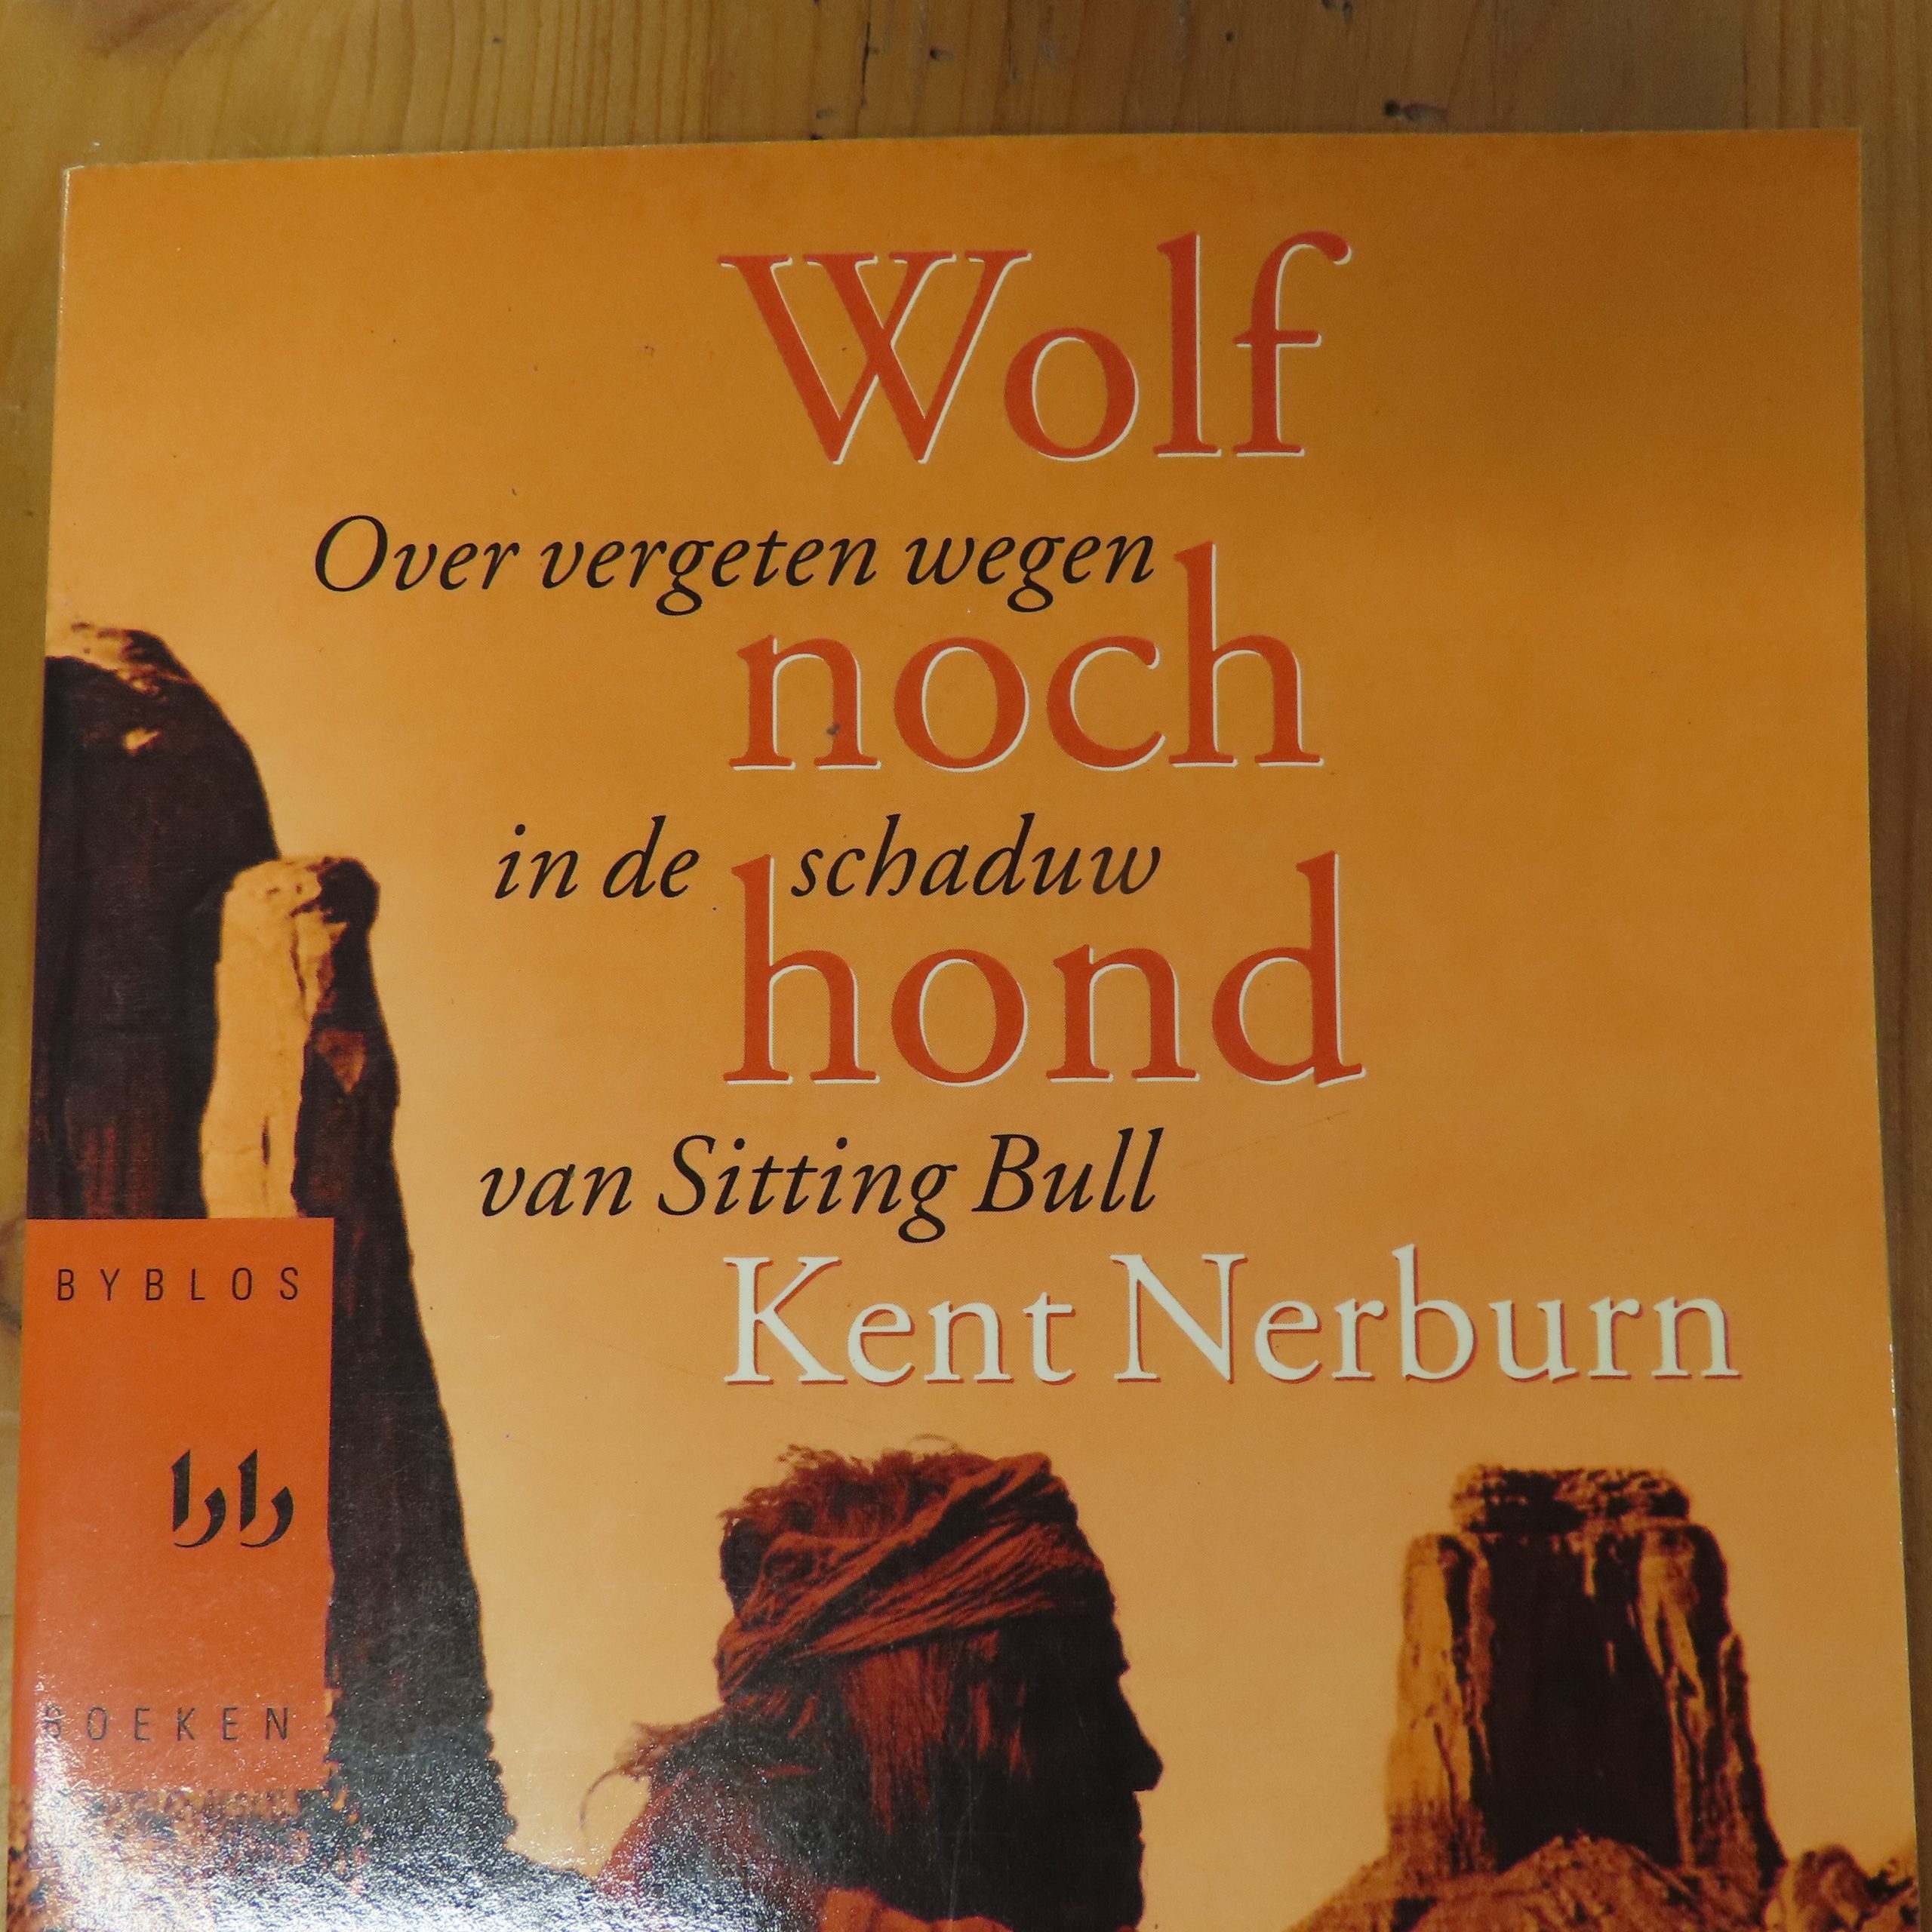 Boek “Wolf noch hond” van Kent Nerburn